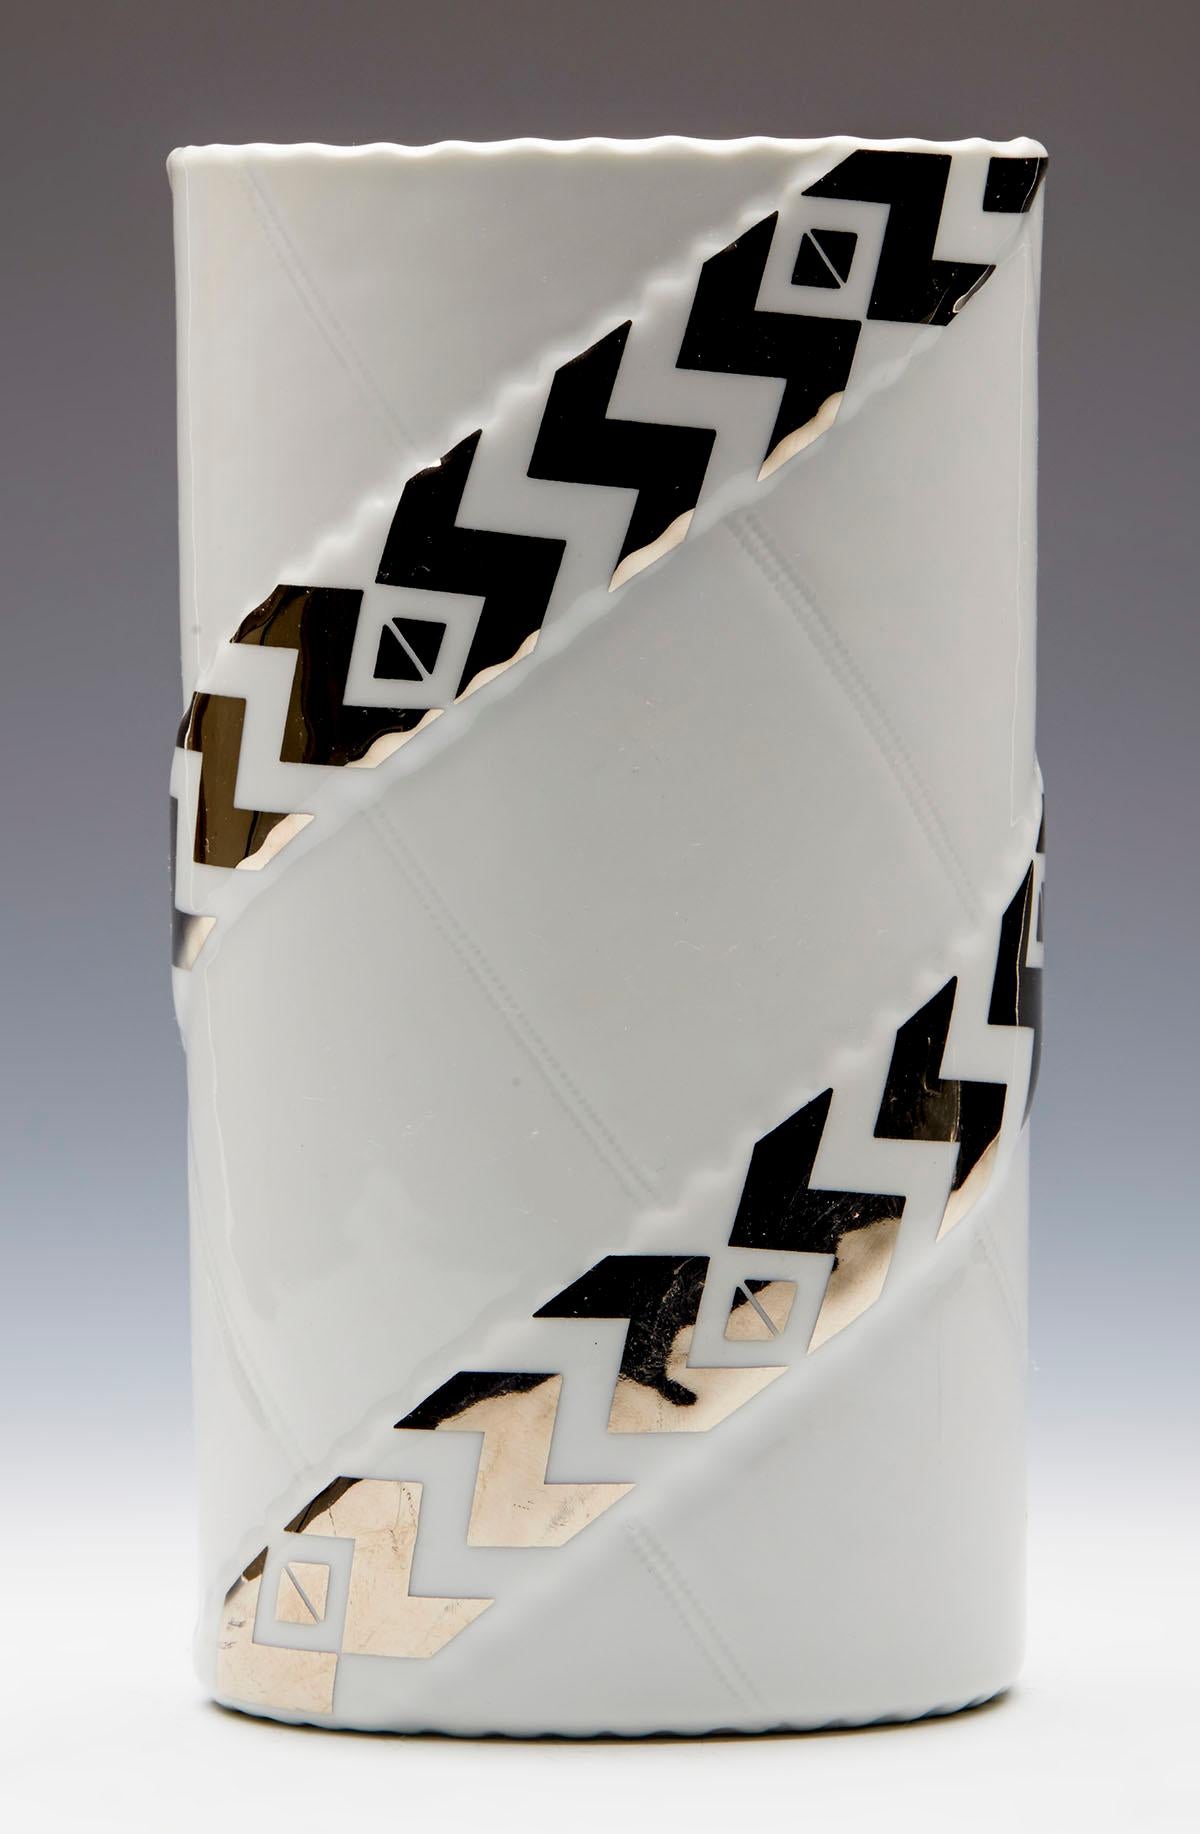 Un très élégant vase d'art en céramique à motif Zenit de Royal Copenhagen, conçu par Anne-Marie Trolle (née en 1944) et datant d'environ 1980. Le vase est de forme ovale haute et repose sur une base ovale non émaillée avec des motifs appliqués à la